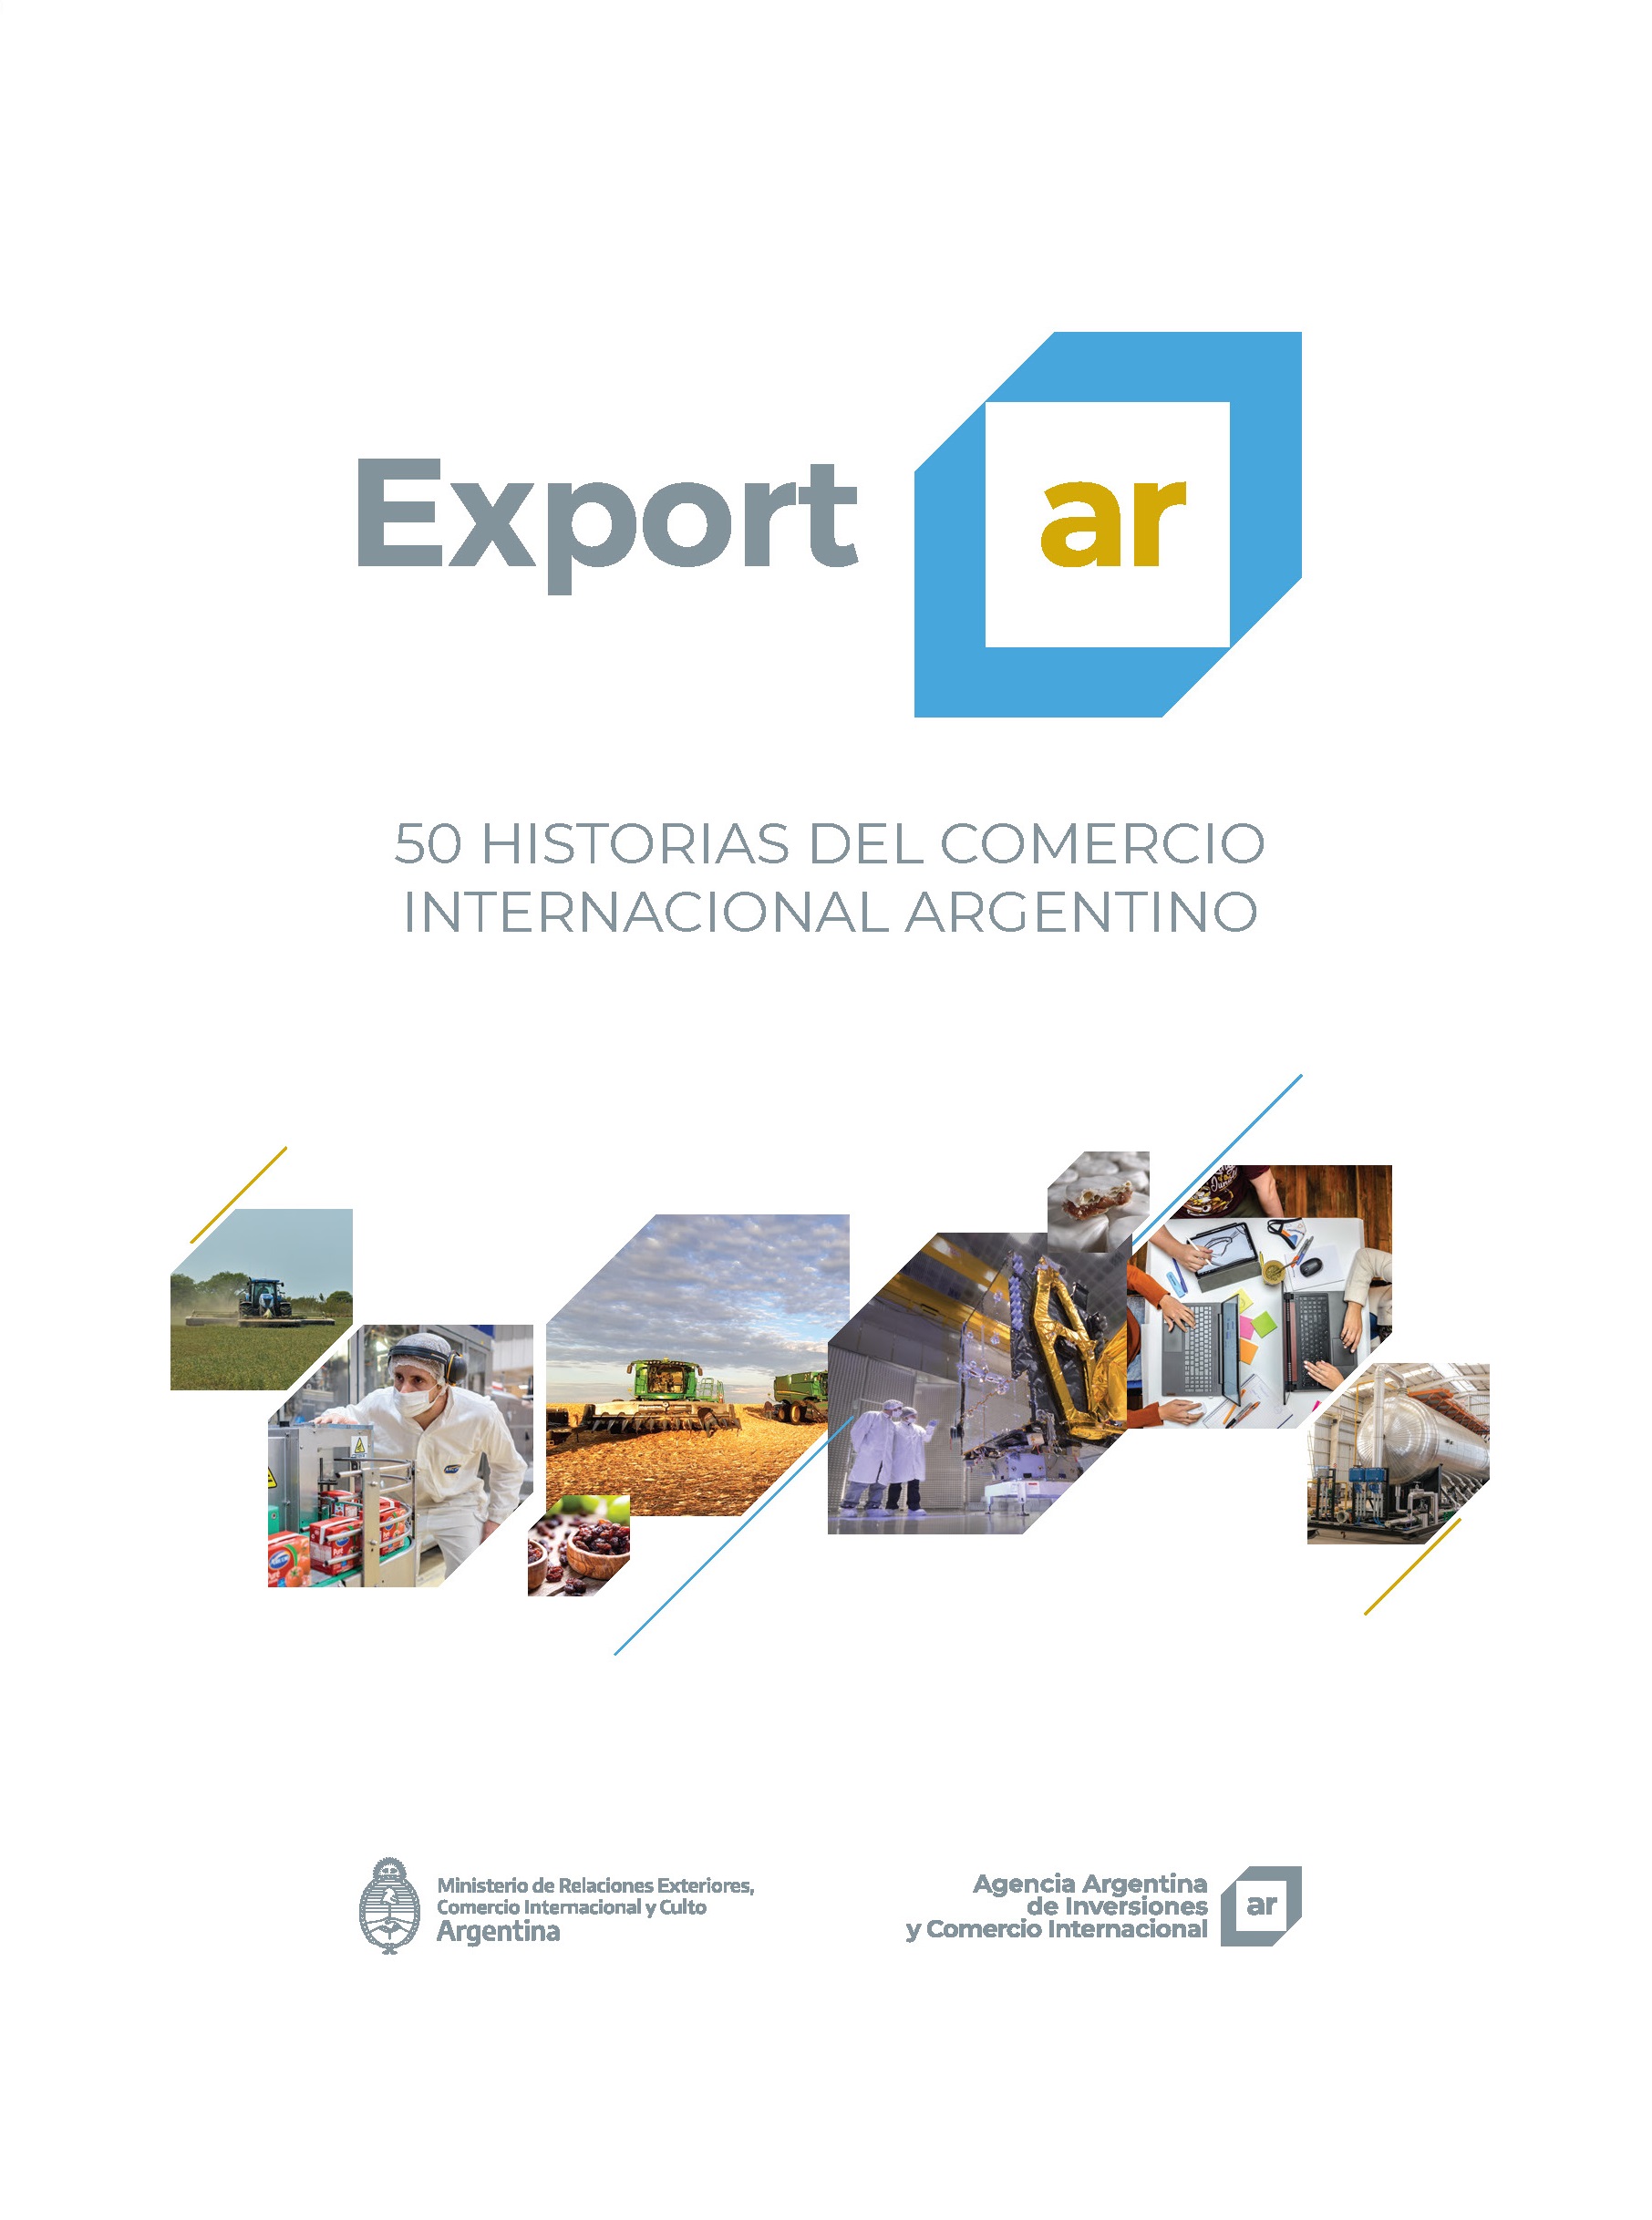 http://exportar.org.ar/images/publicaciones/Exportar. 50 historias del comercio internacional argentino